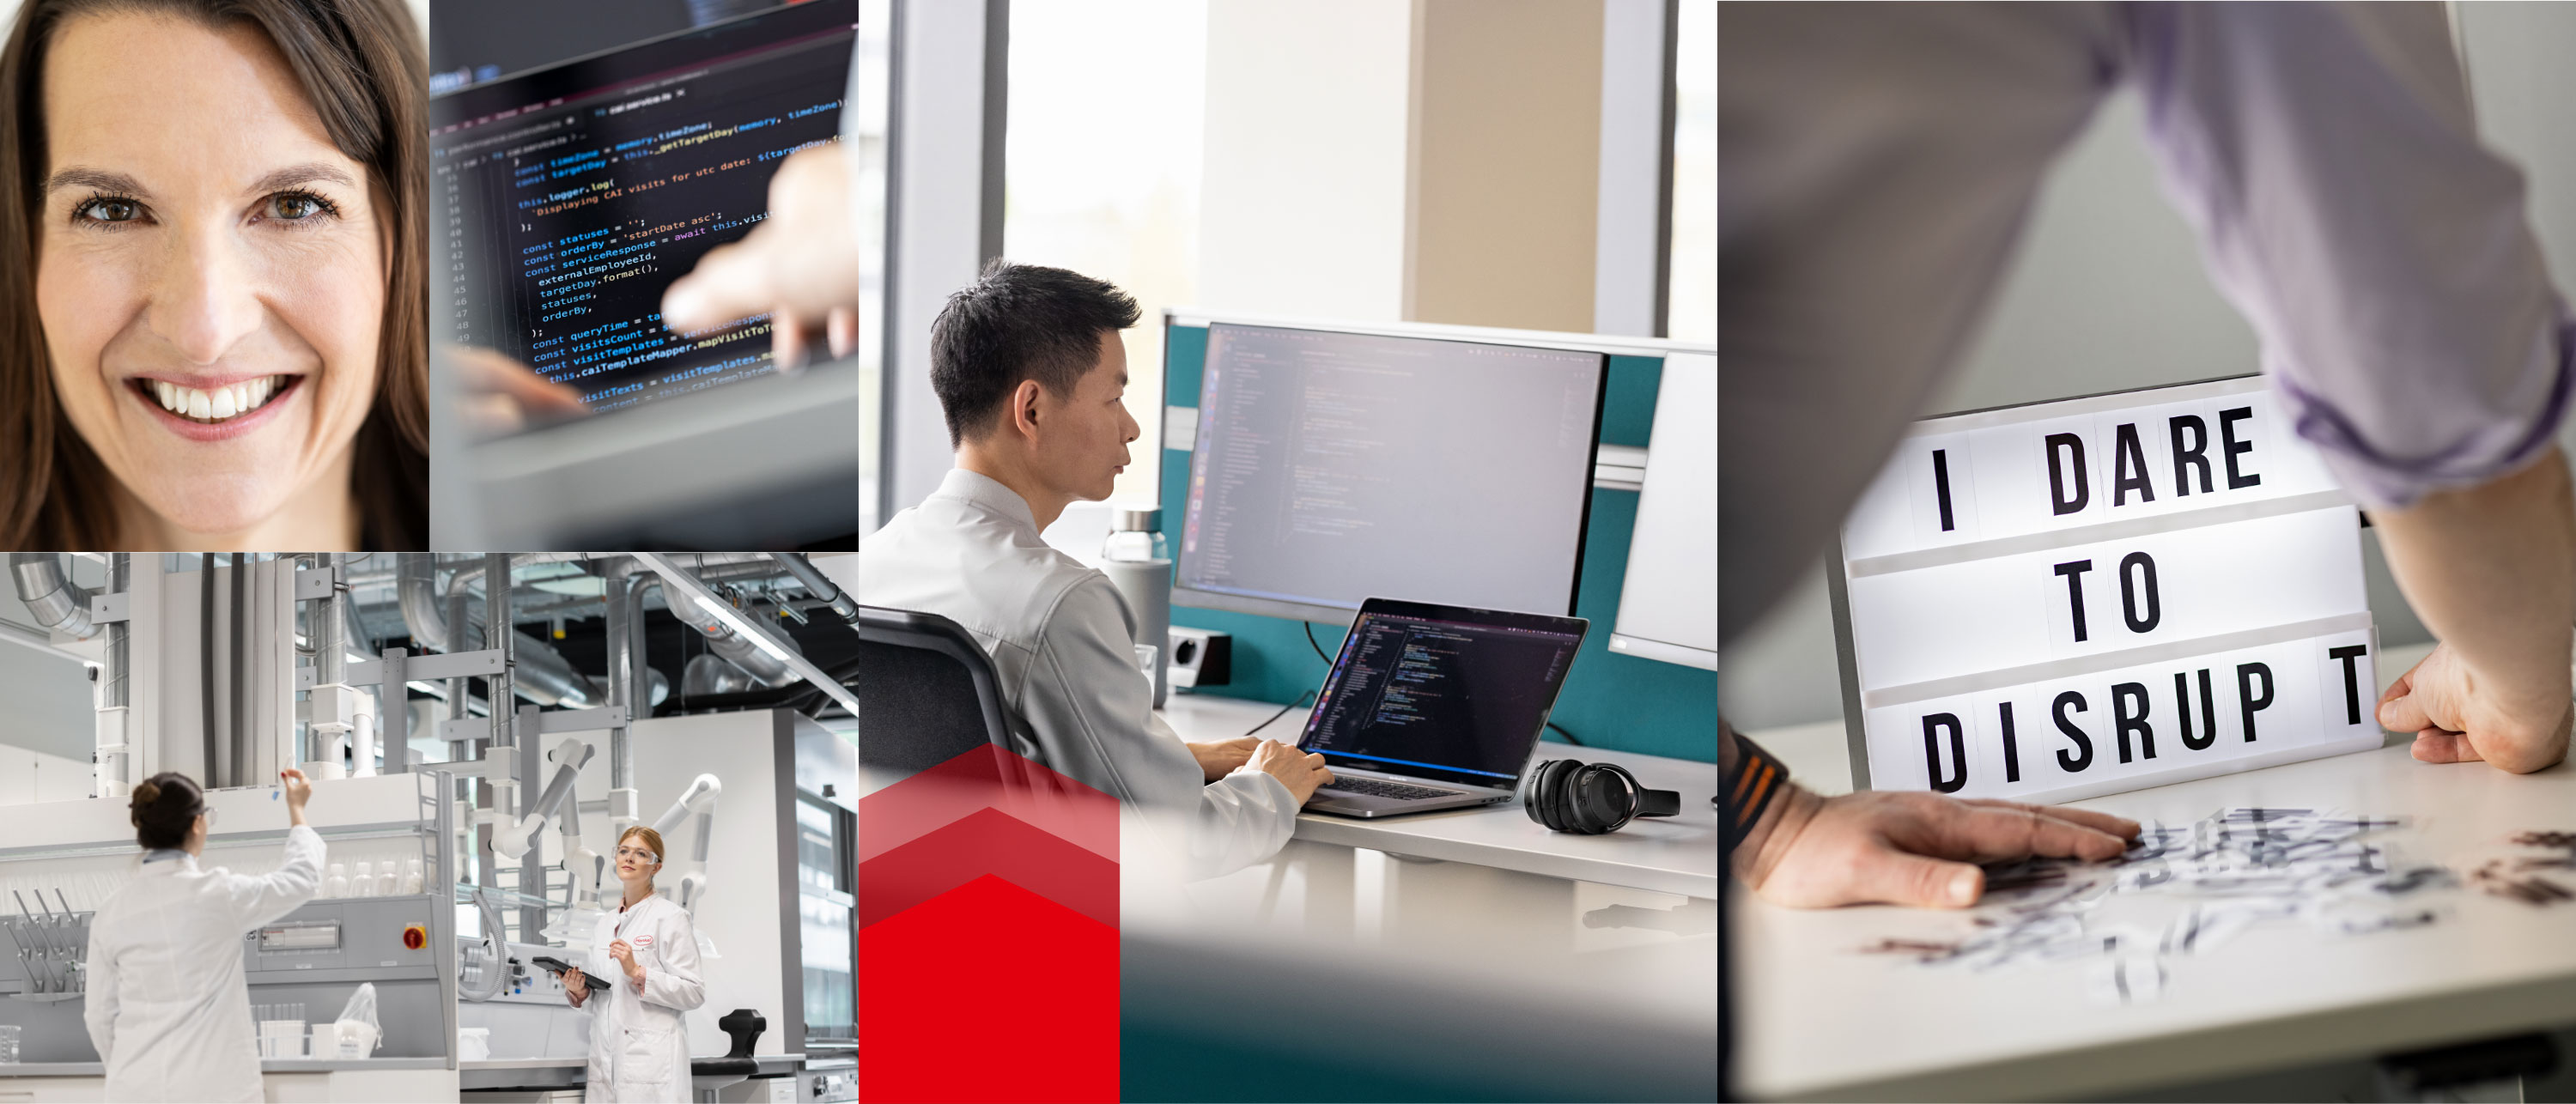 تجميعة صور لأماكن العمل في Henkel. صور للتكنولوجيا والتحوّل الرقمي والأفكار الجديدة.